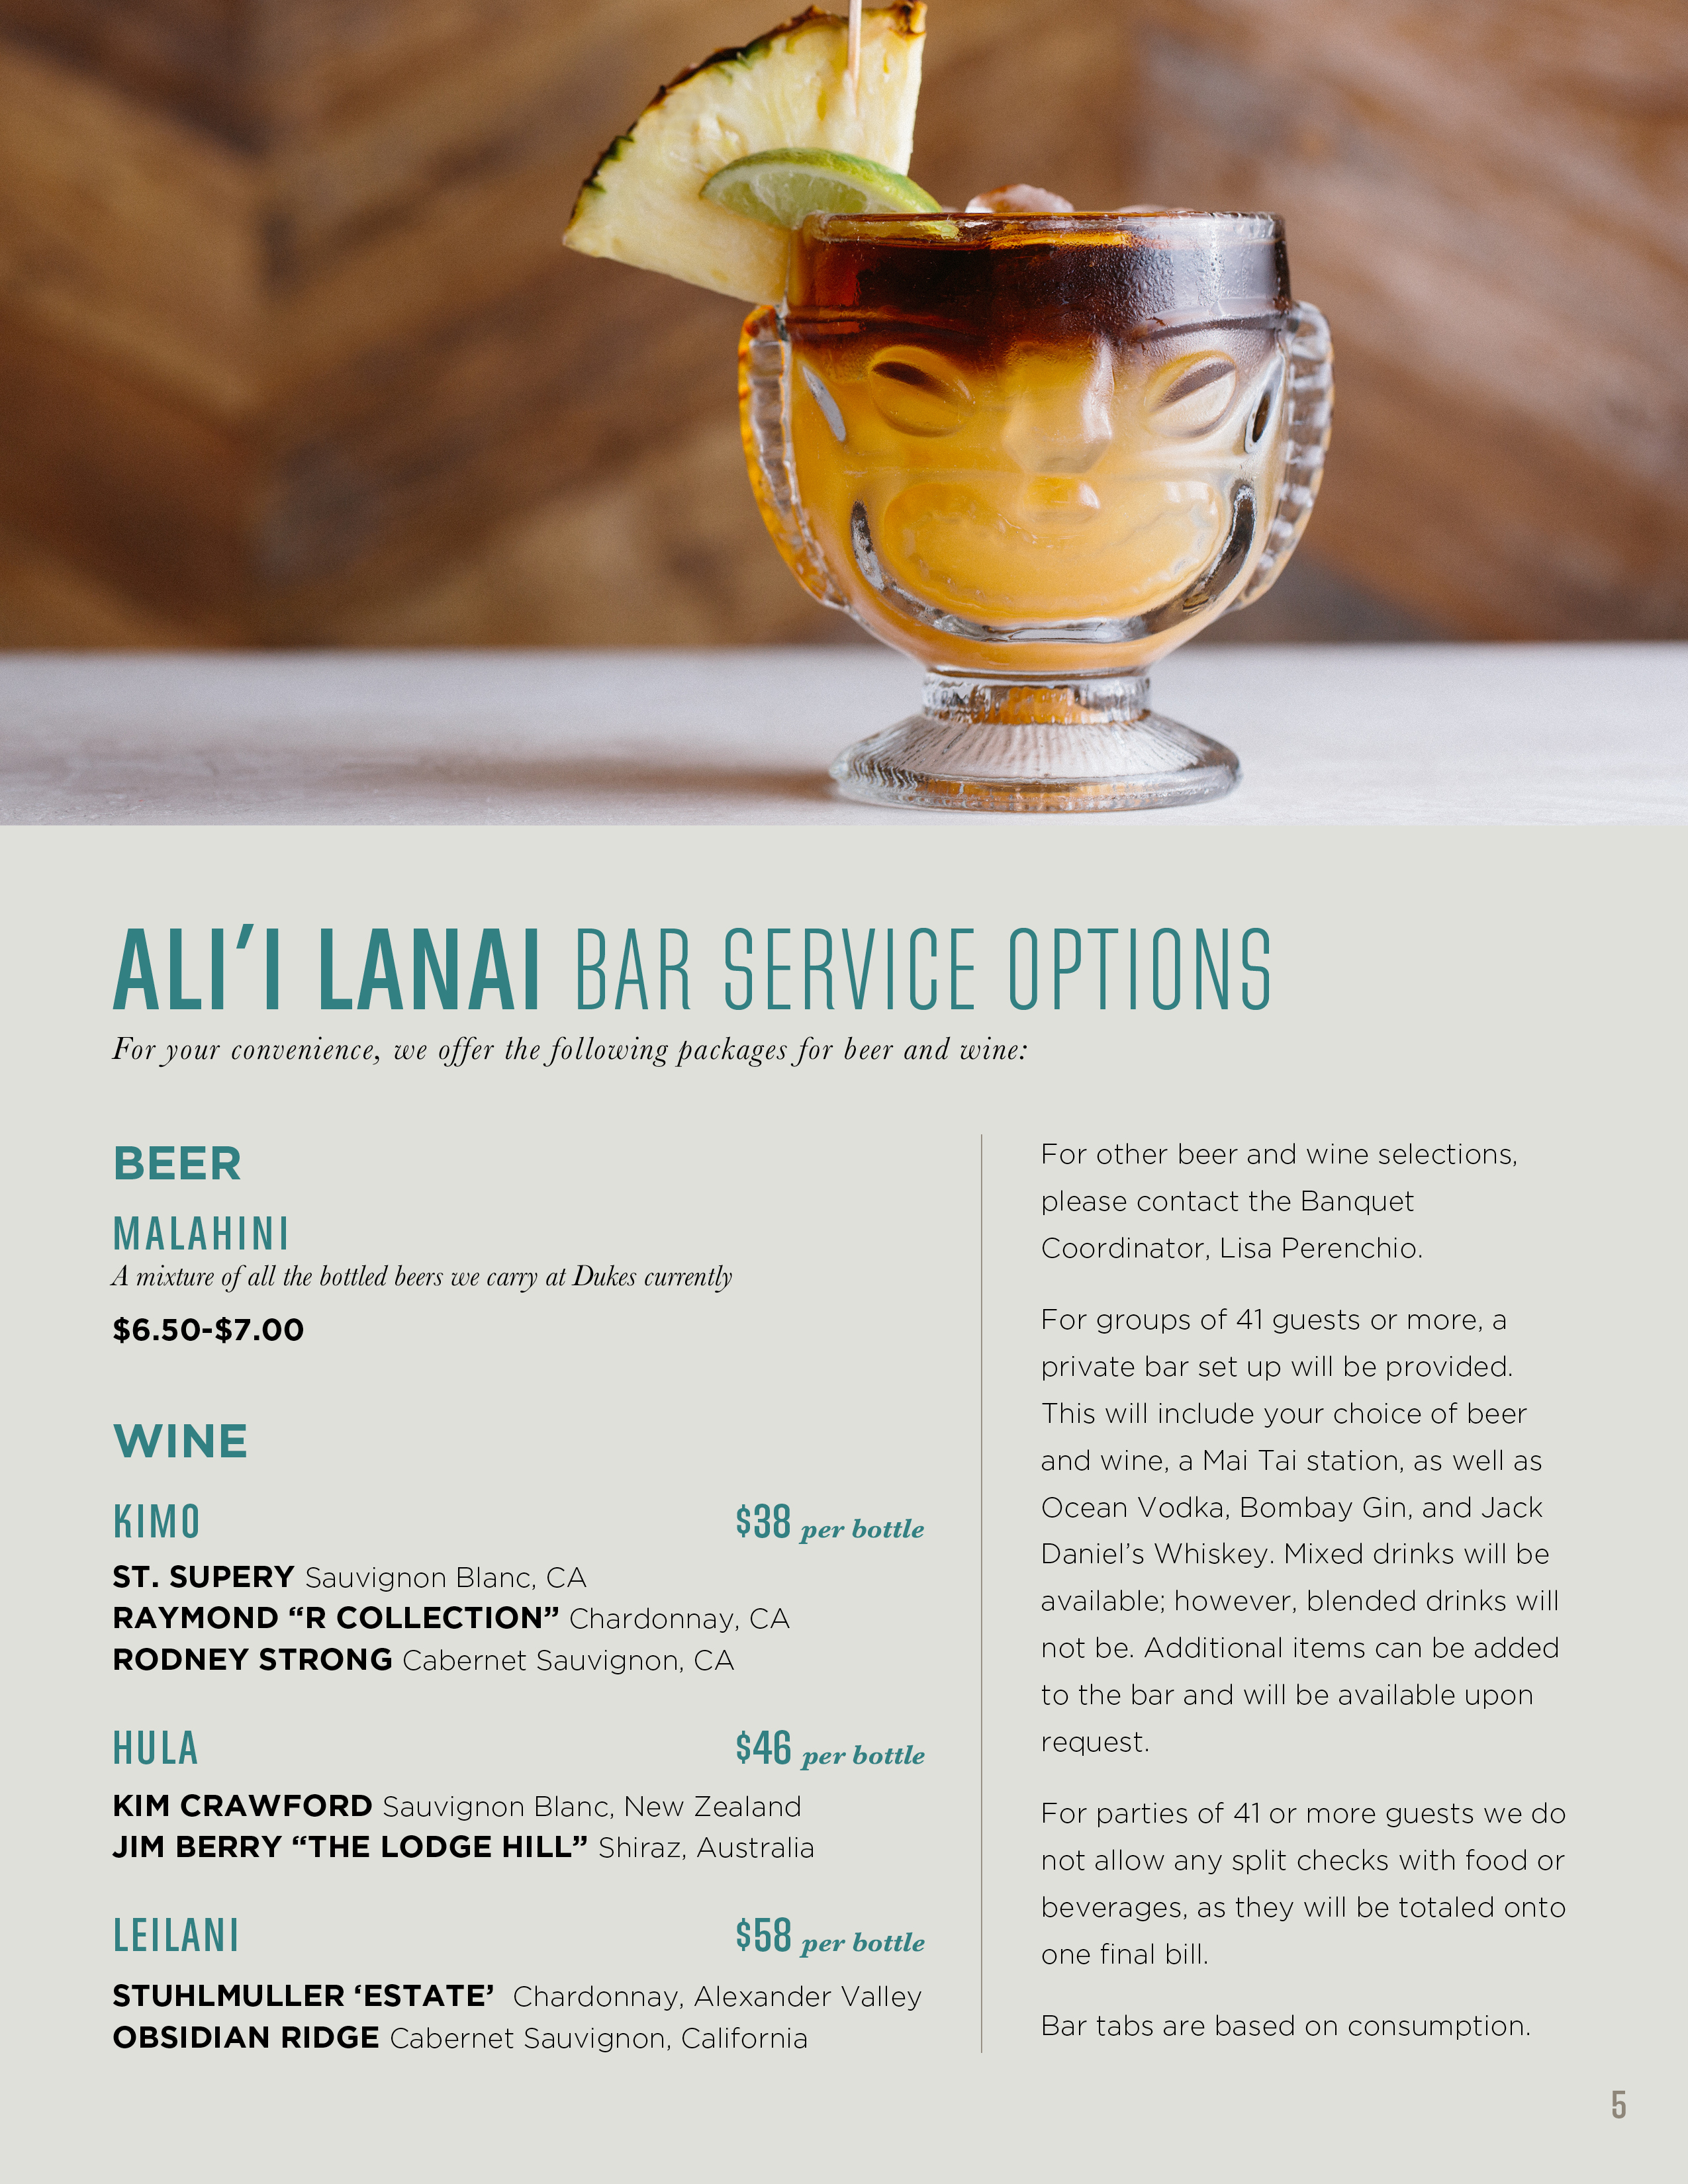 Ali'i Lanai Bar Options for Banquet